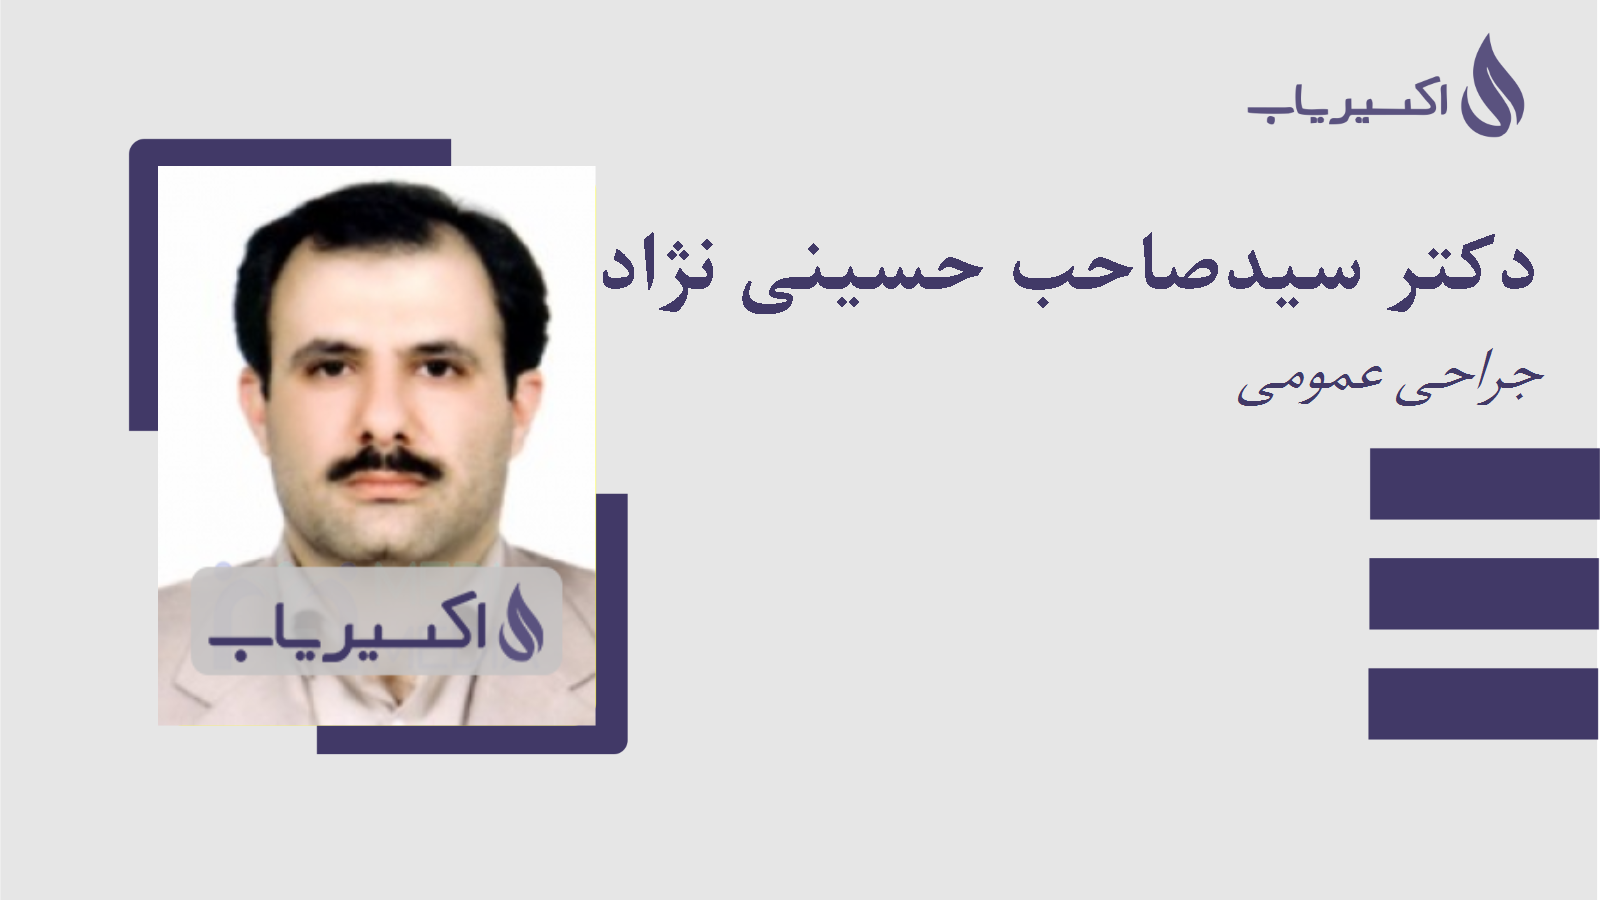 مطب دکتر سیدصاحب حسینی نژاد